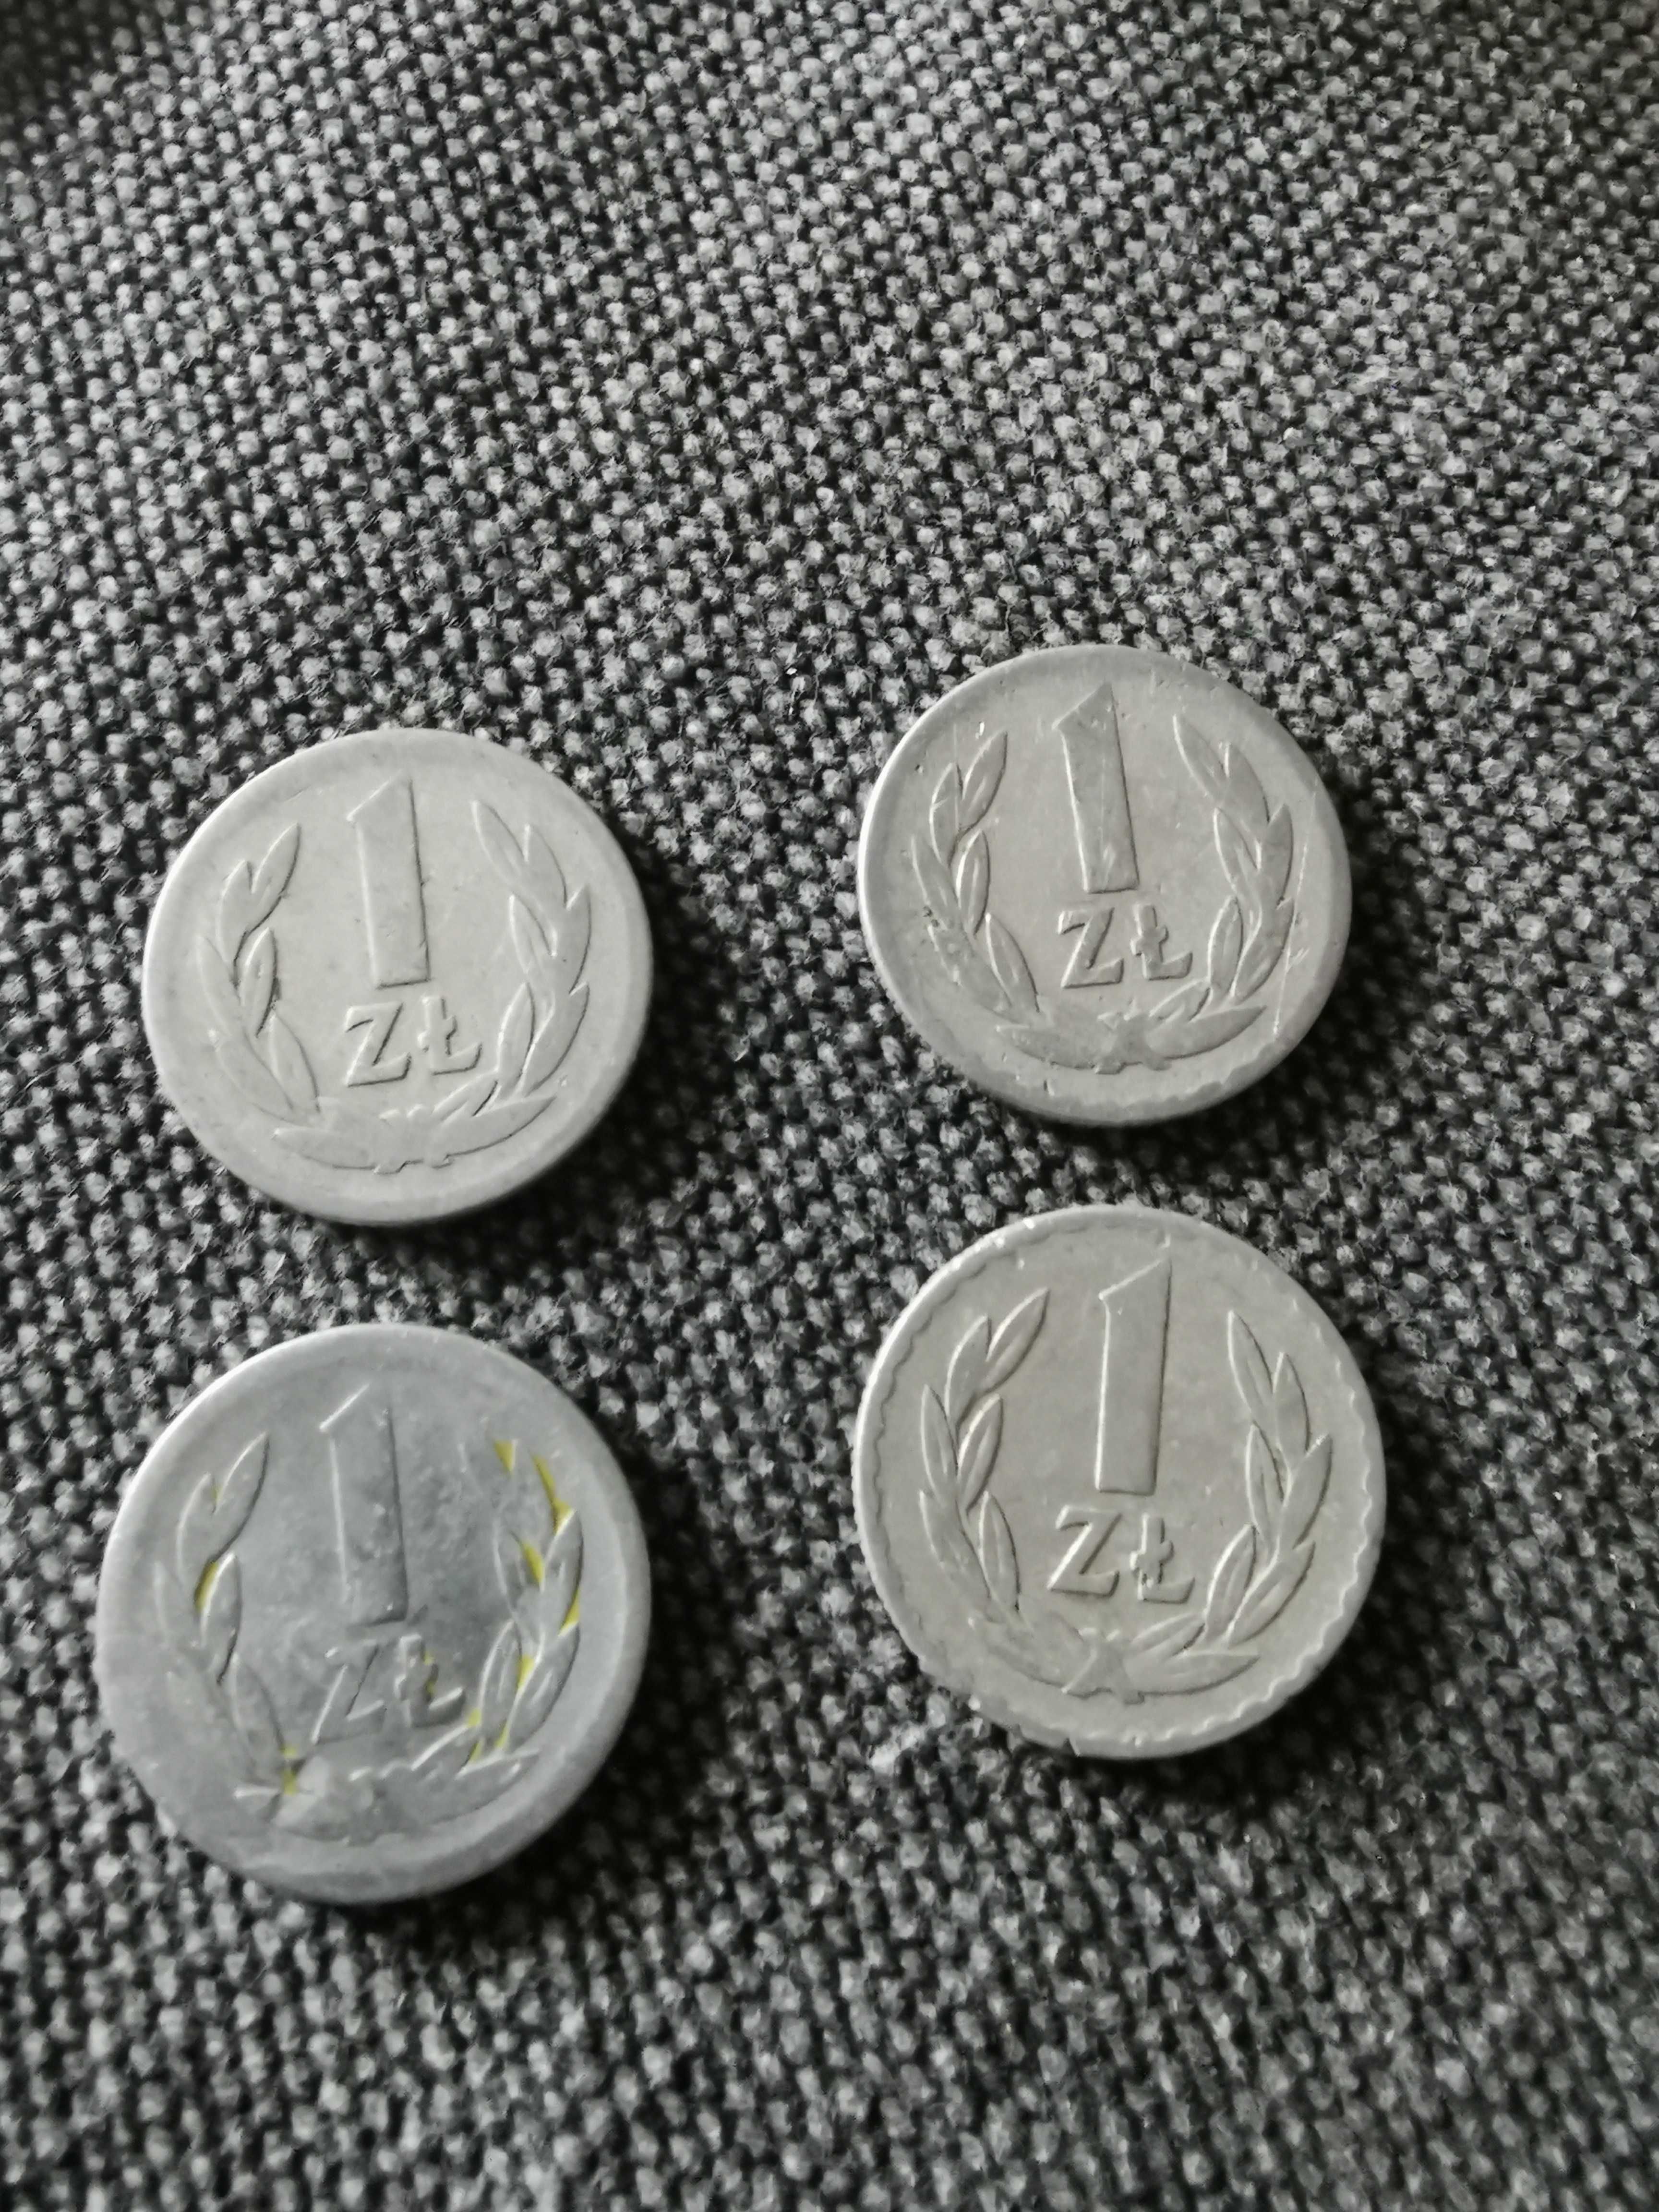 moneta 1 zl z 1949 roku-4szt